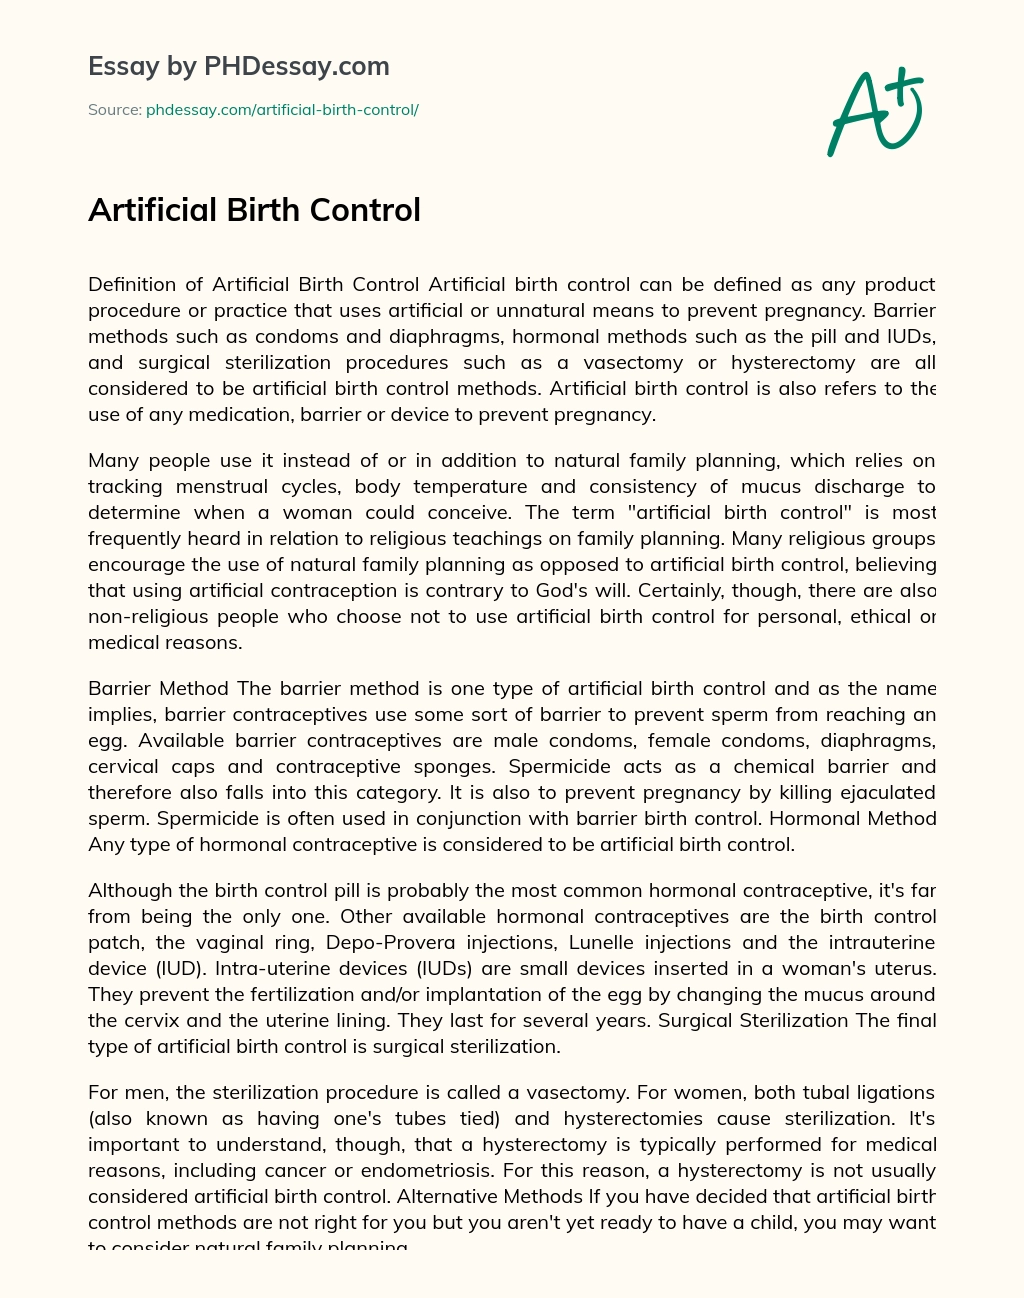 birth control essay introduction